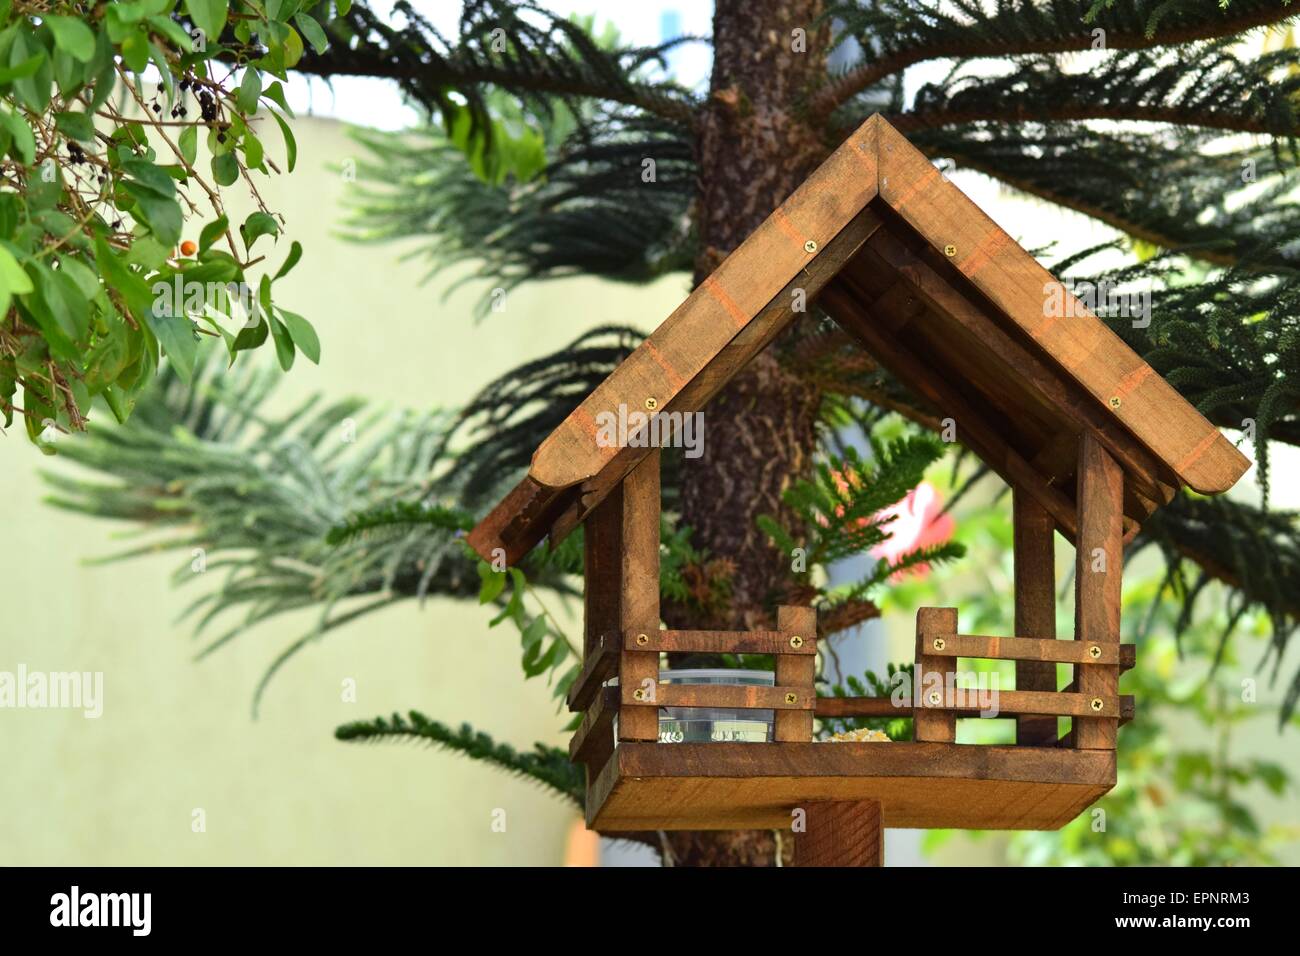 A bird house in the garden Stock Photo